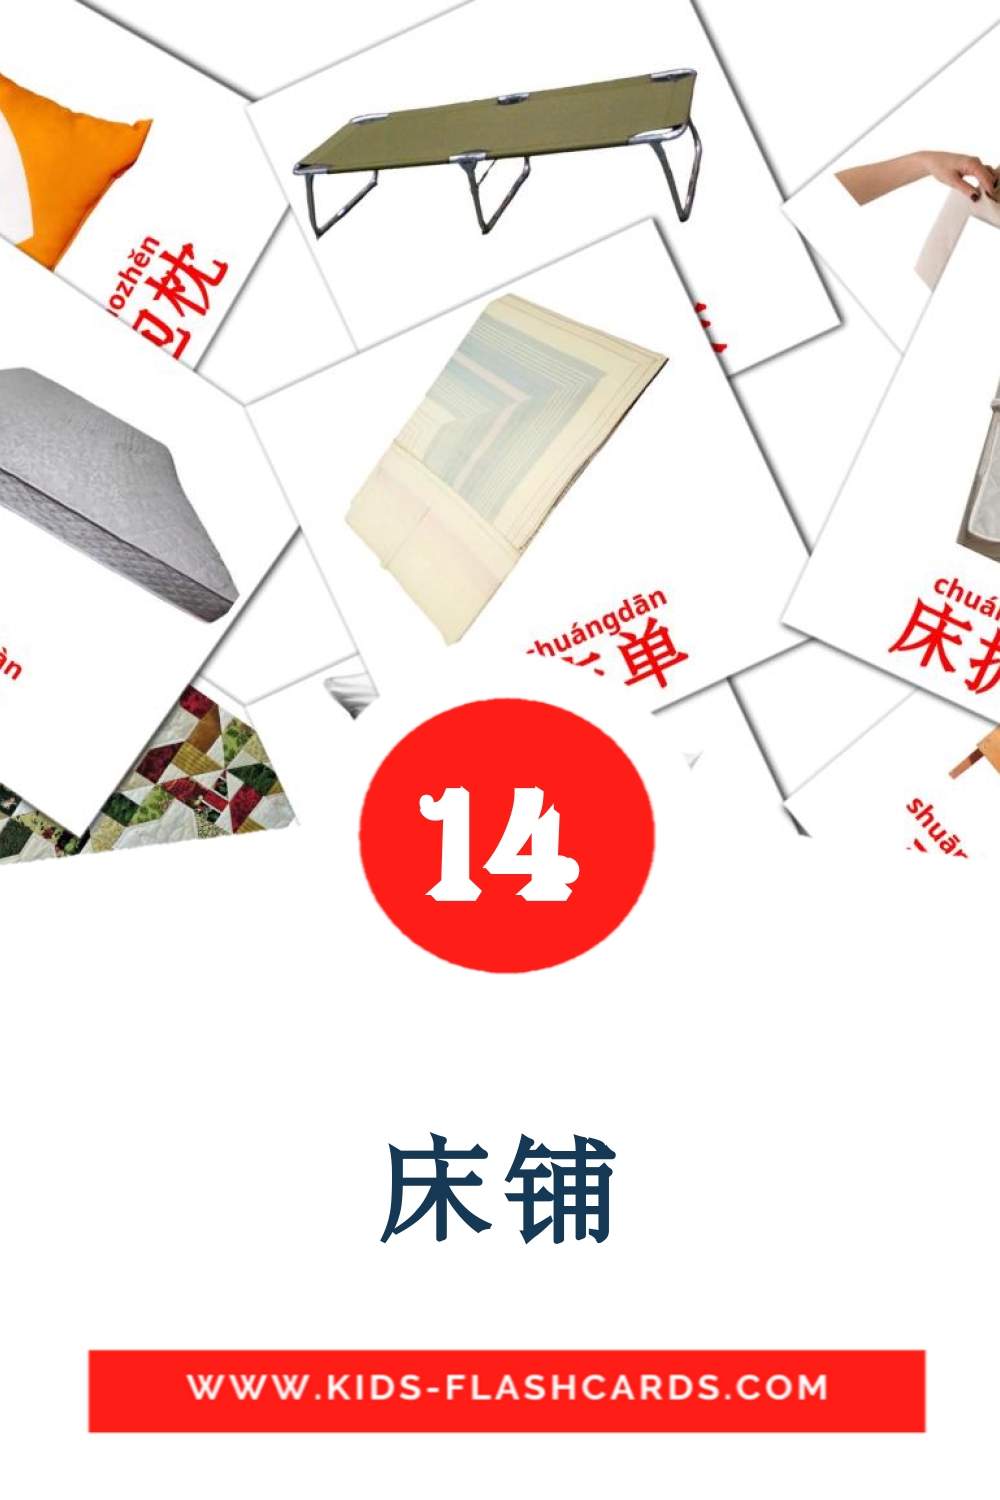 14 床铺 fotokaarten voor kleuters in het chinees(vereenvoudigd)